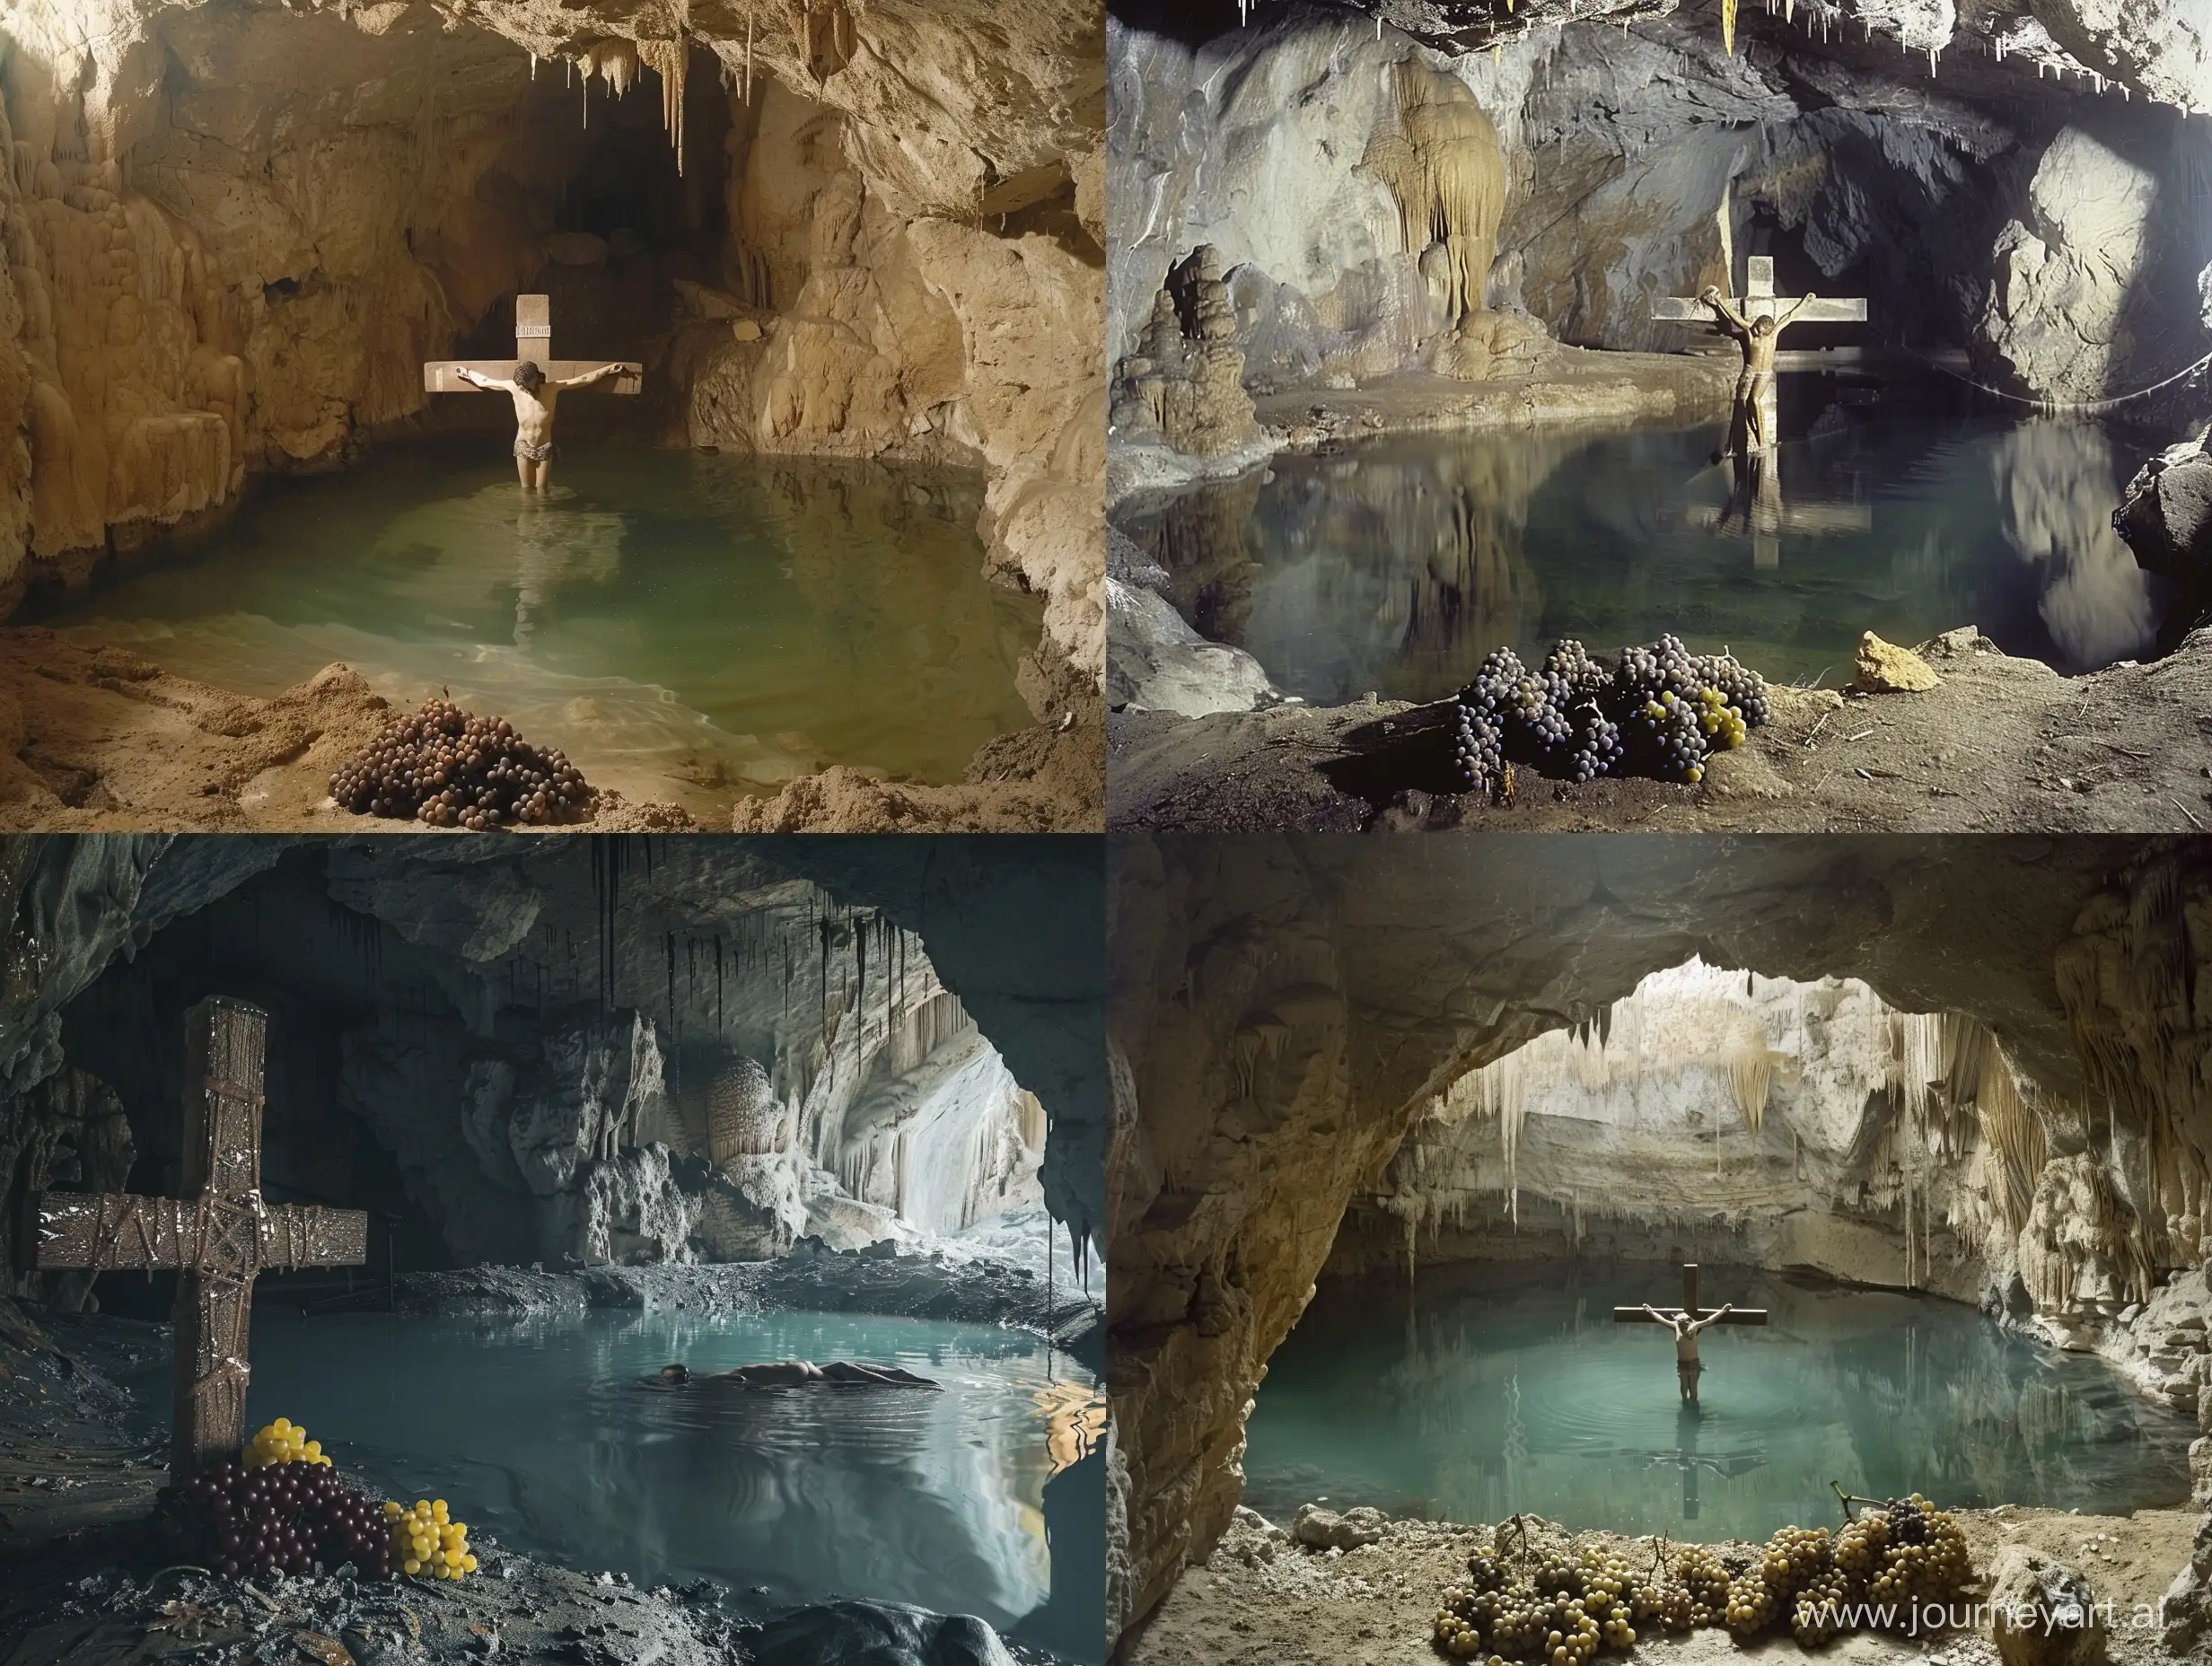 Пещера в которой находится озеро, в центре озера, по пояс погружен мужчина, который распят на кресте. Рядом с ним лежат виноградные грозди